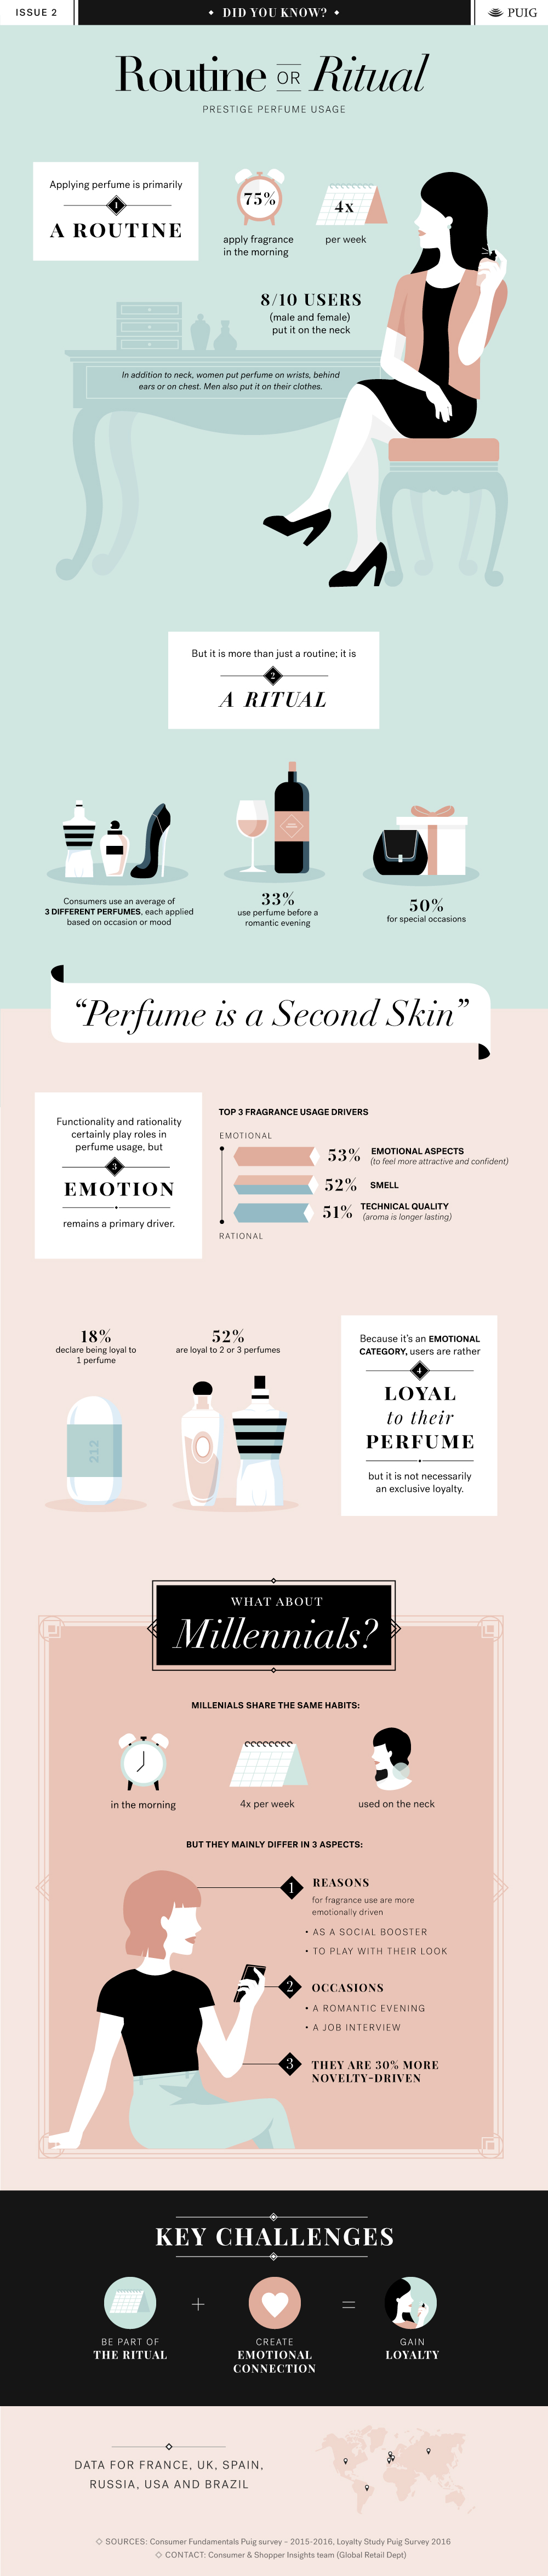 Routine or Ritual: Prestige Perfume Usage